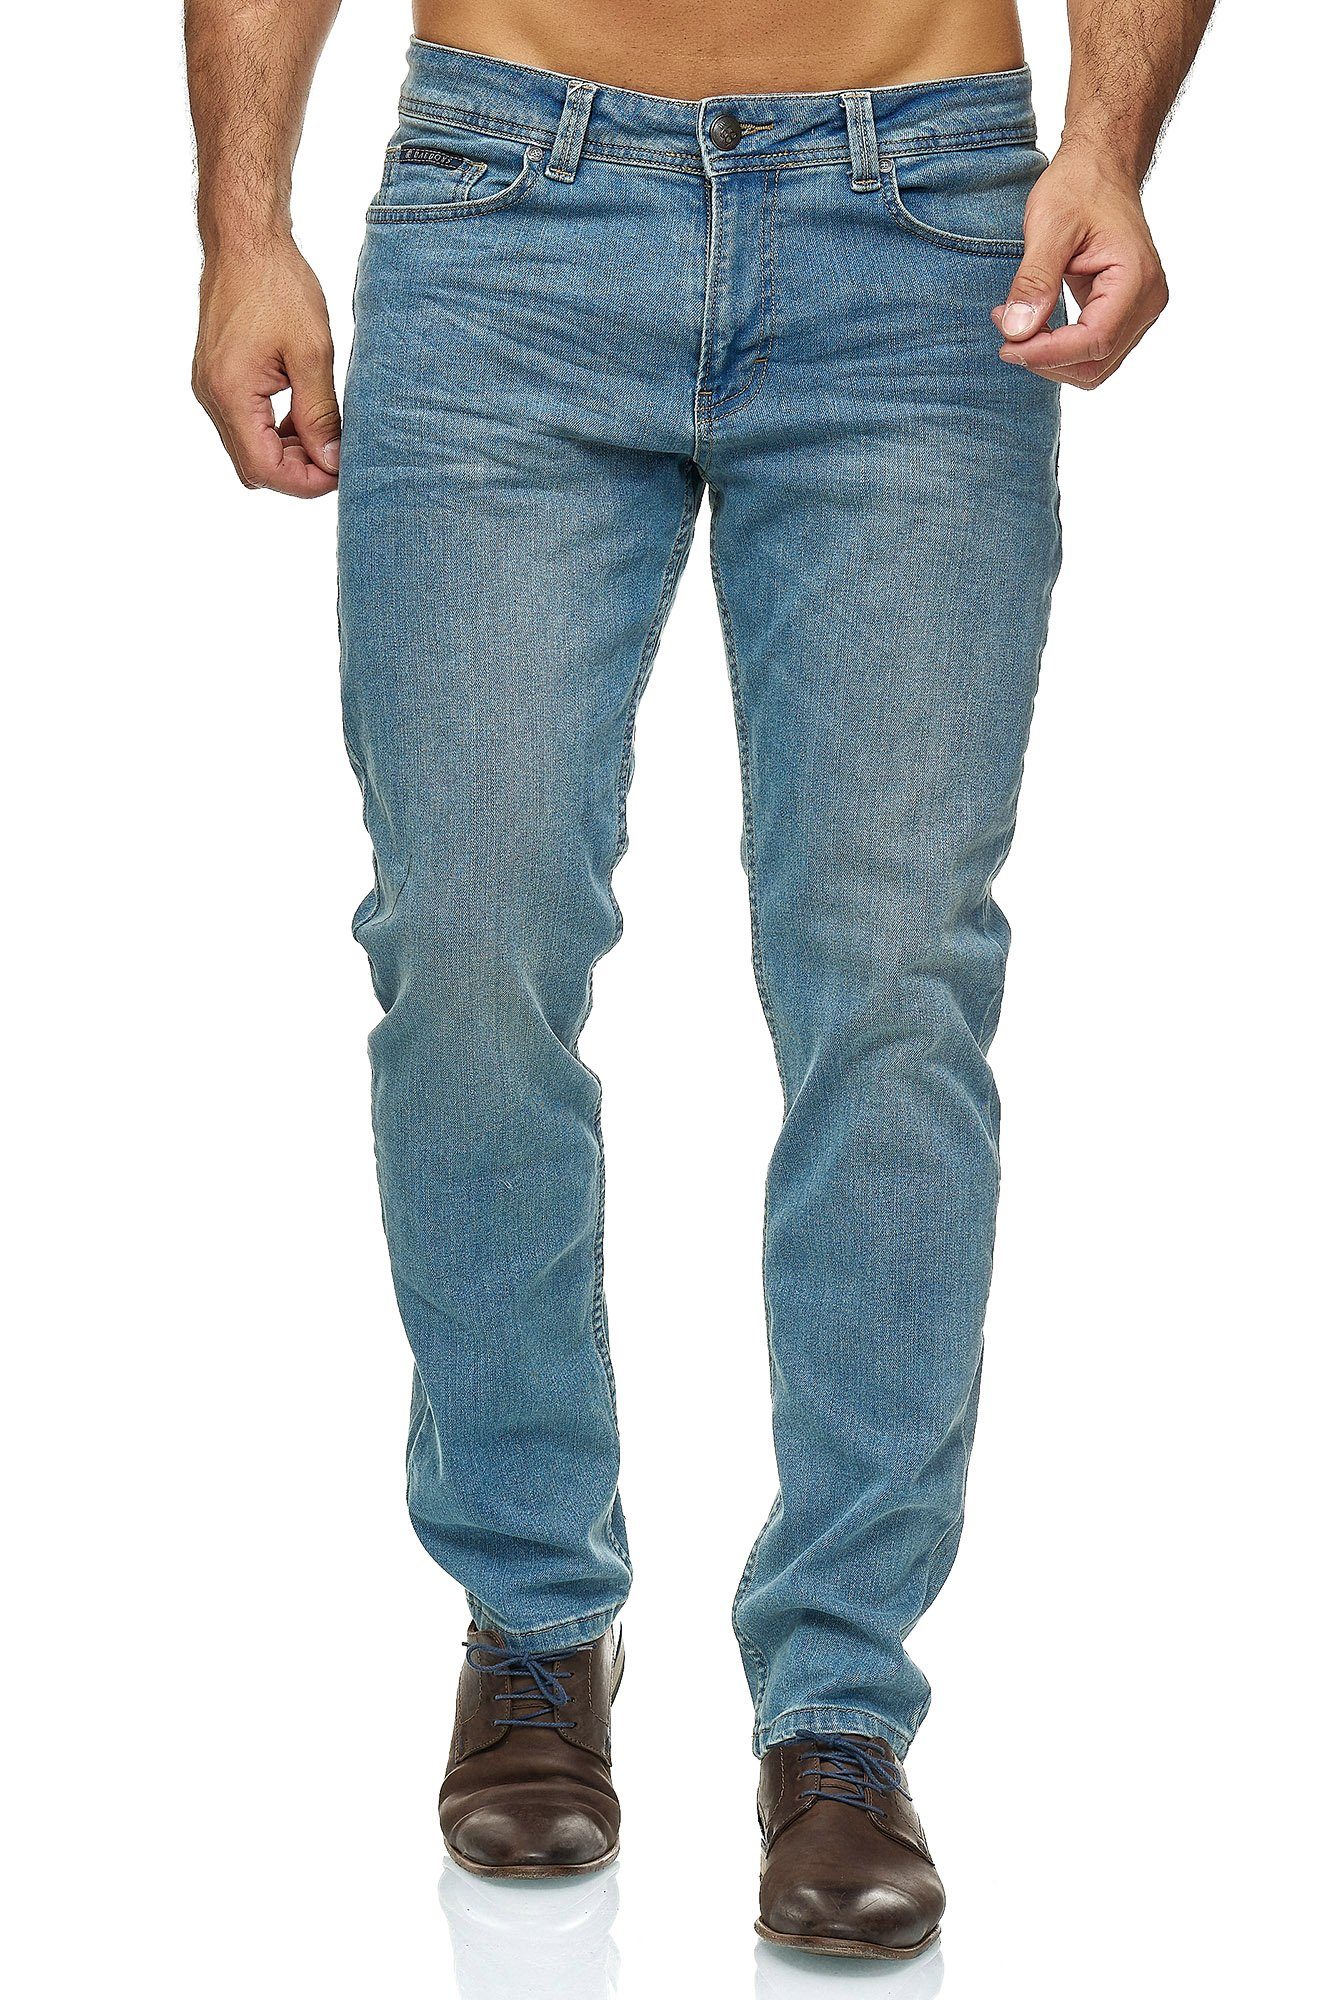 BARBONS 5-Pocket-Jeans Herren Regular Fit 5-Pocket Design 05-Hellblau